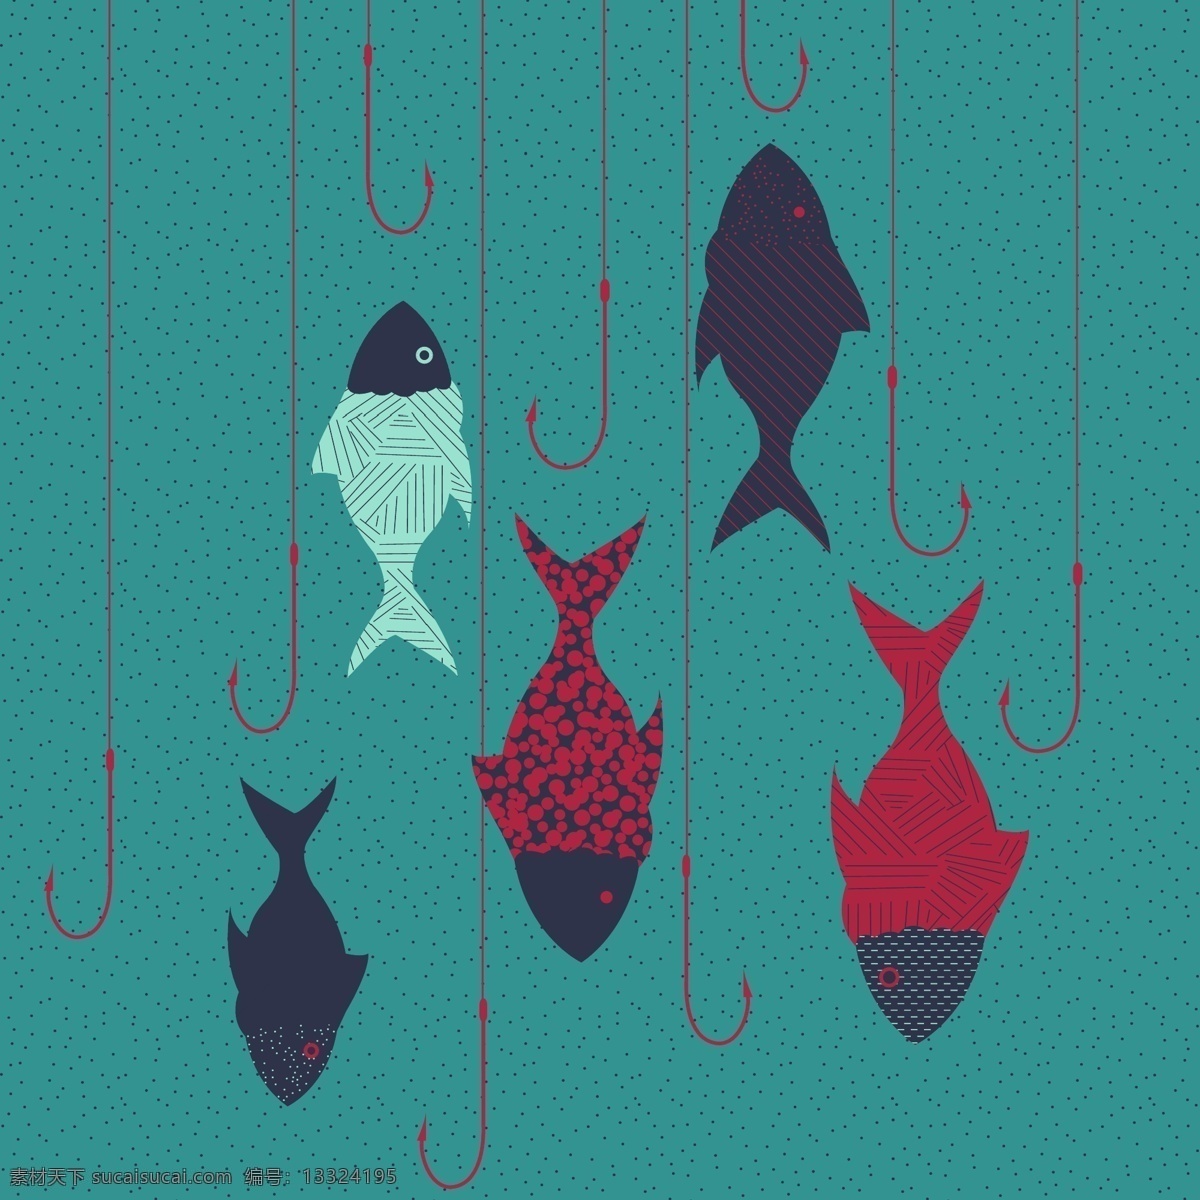 印花 矢量图 动物图案 服装图案 印花矢量图 鱼 鱼钩 面料图库 服装设计 图案花型